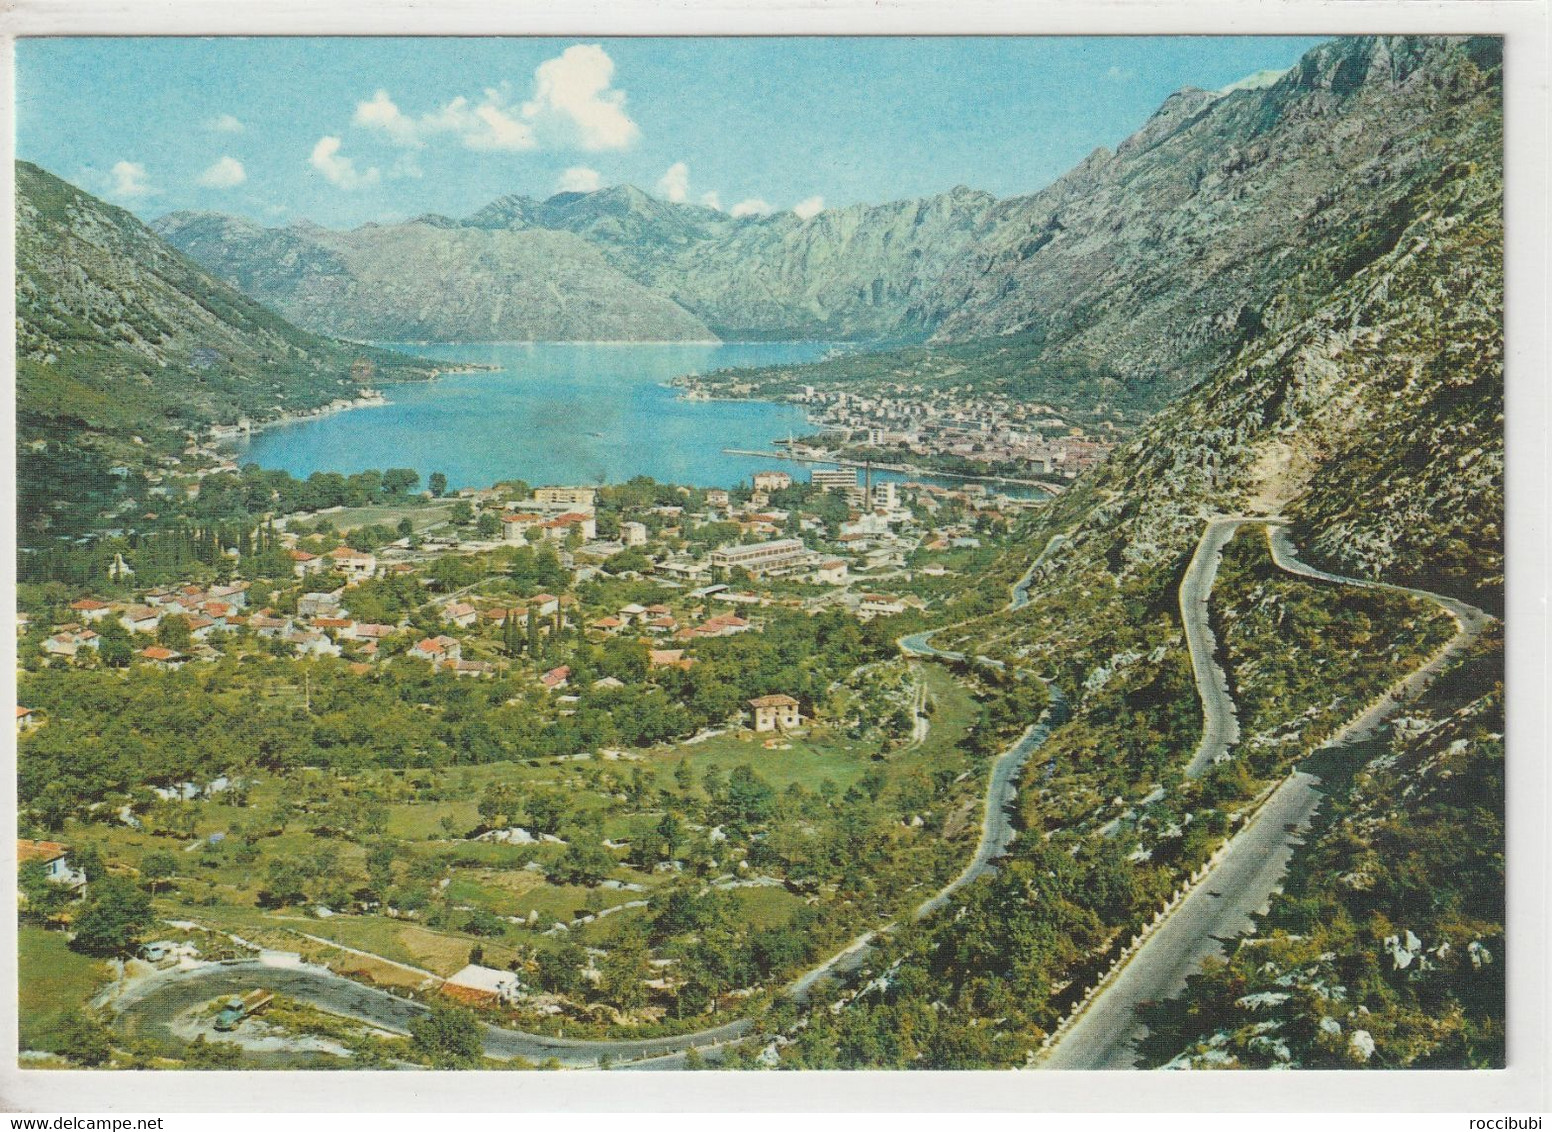 Kotor, Montenegro - Montenegro